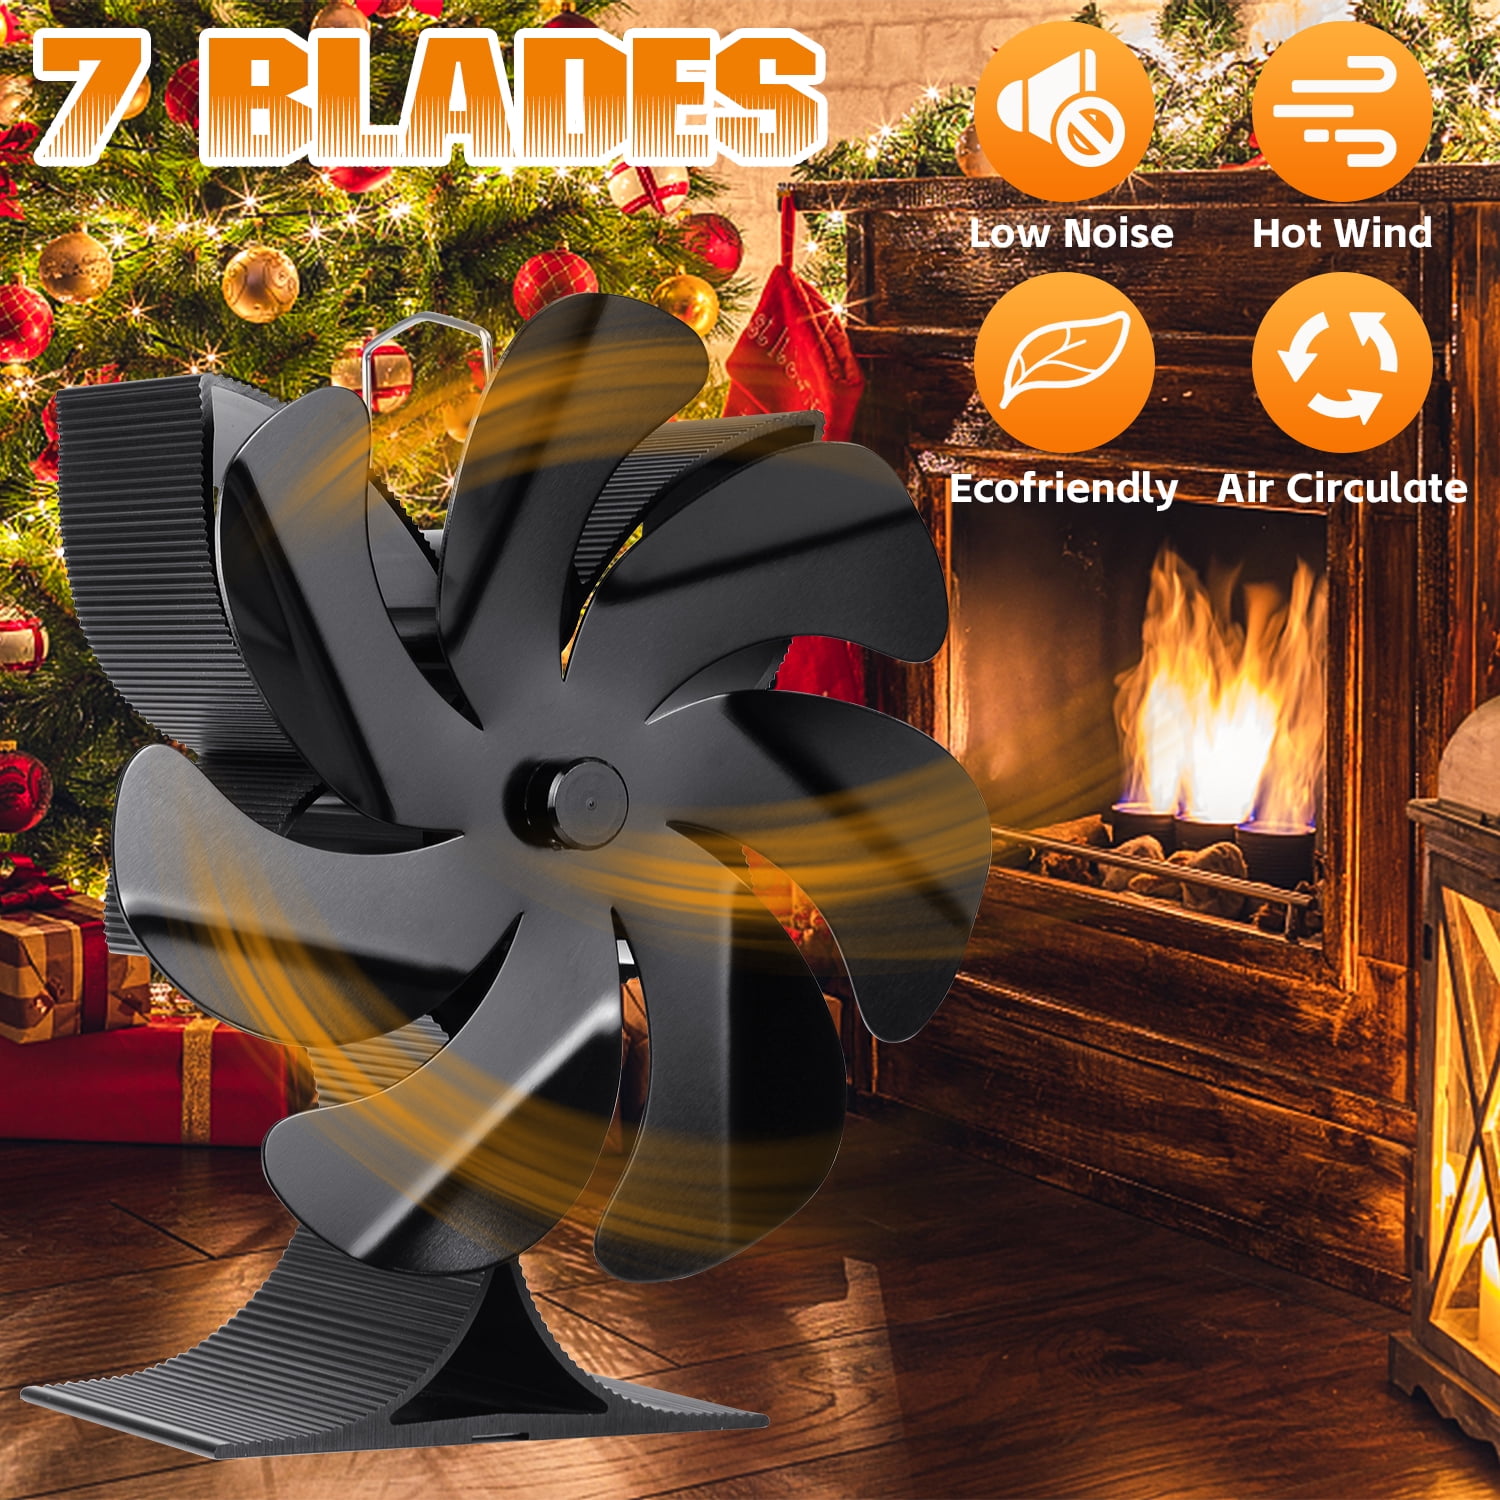 Wood Heater 7 Blade Stove Fan Fireplace Fire Heat Fan Saving Ecofan